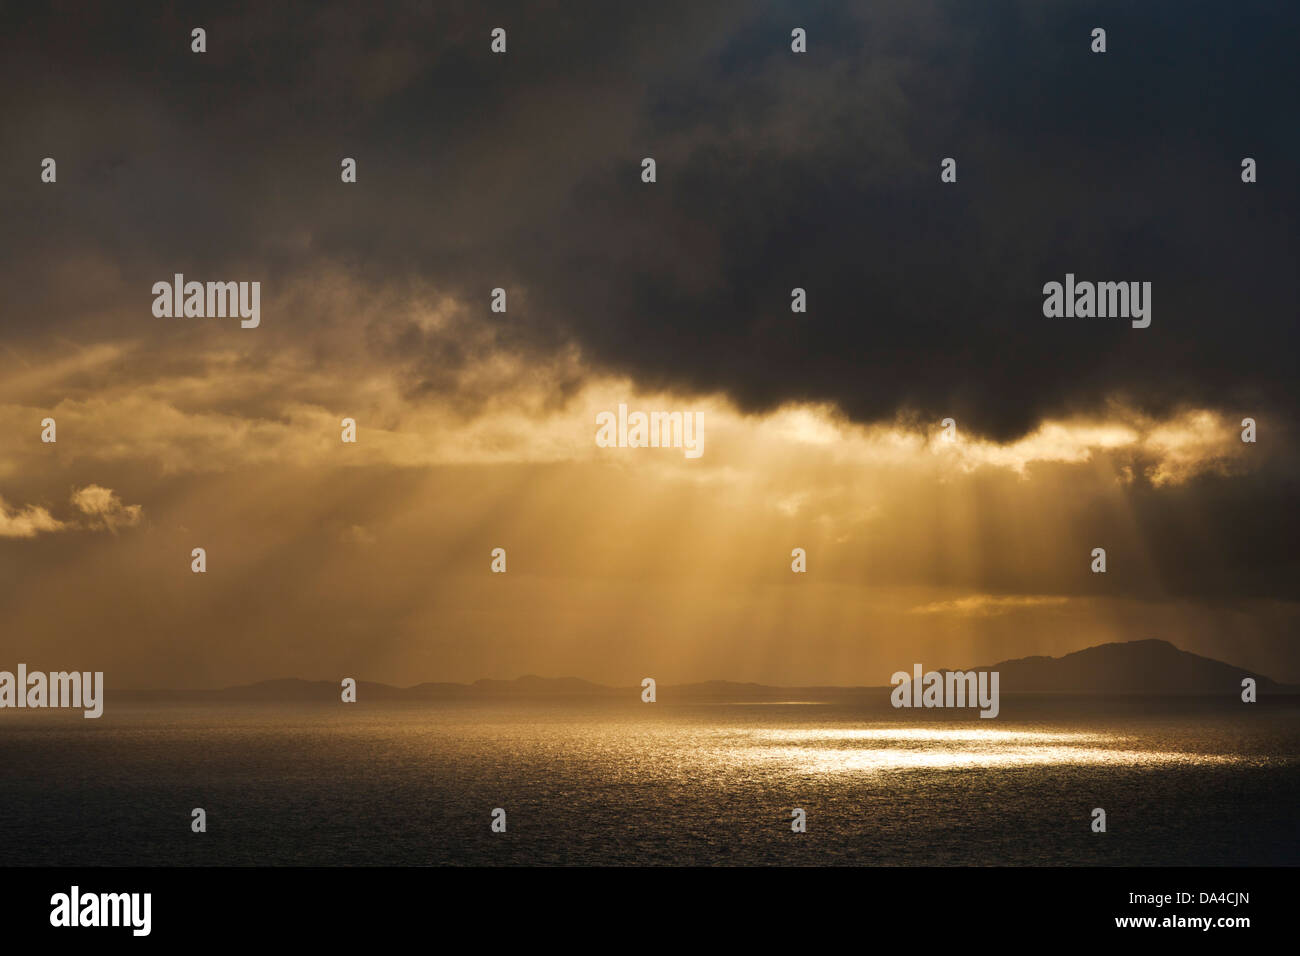 La luce della sera risplende attraverso le nuvole scure e tempestose sul mare Scozia Regno Unito GB Europa Foto Stock